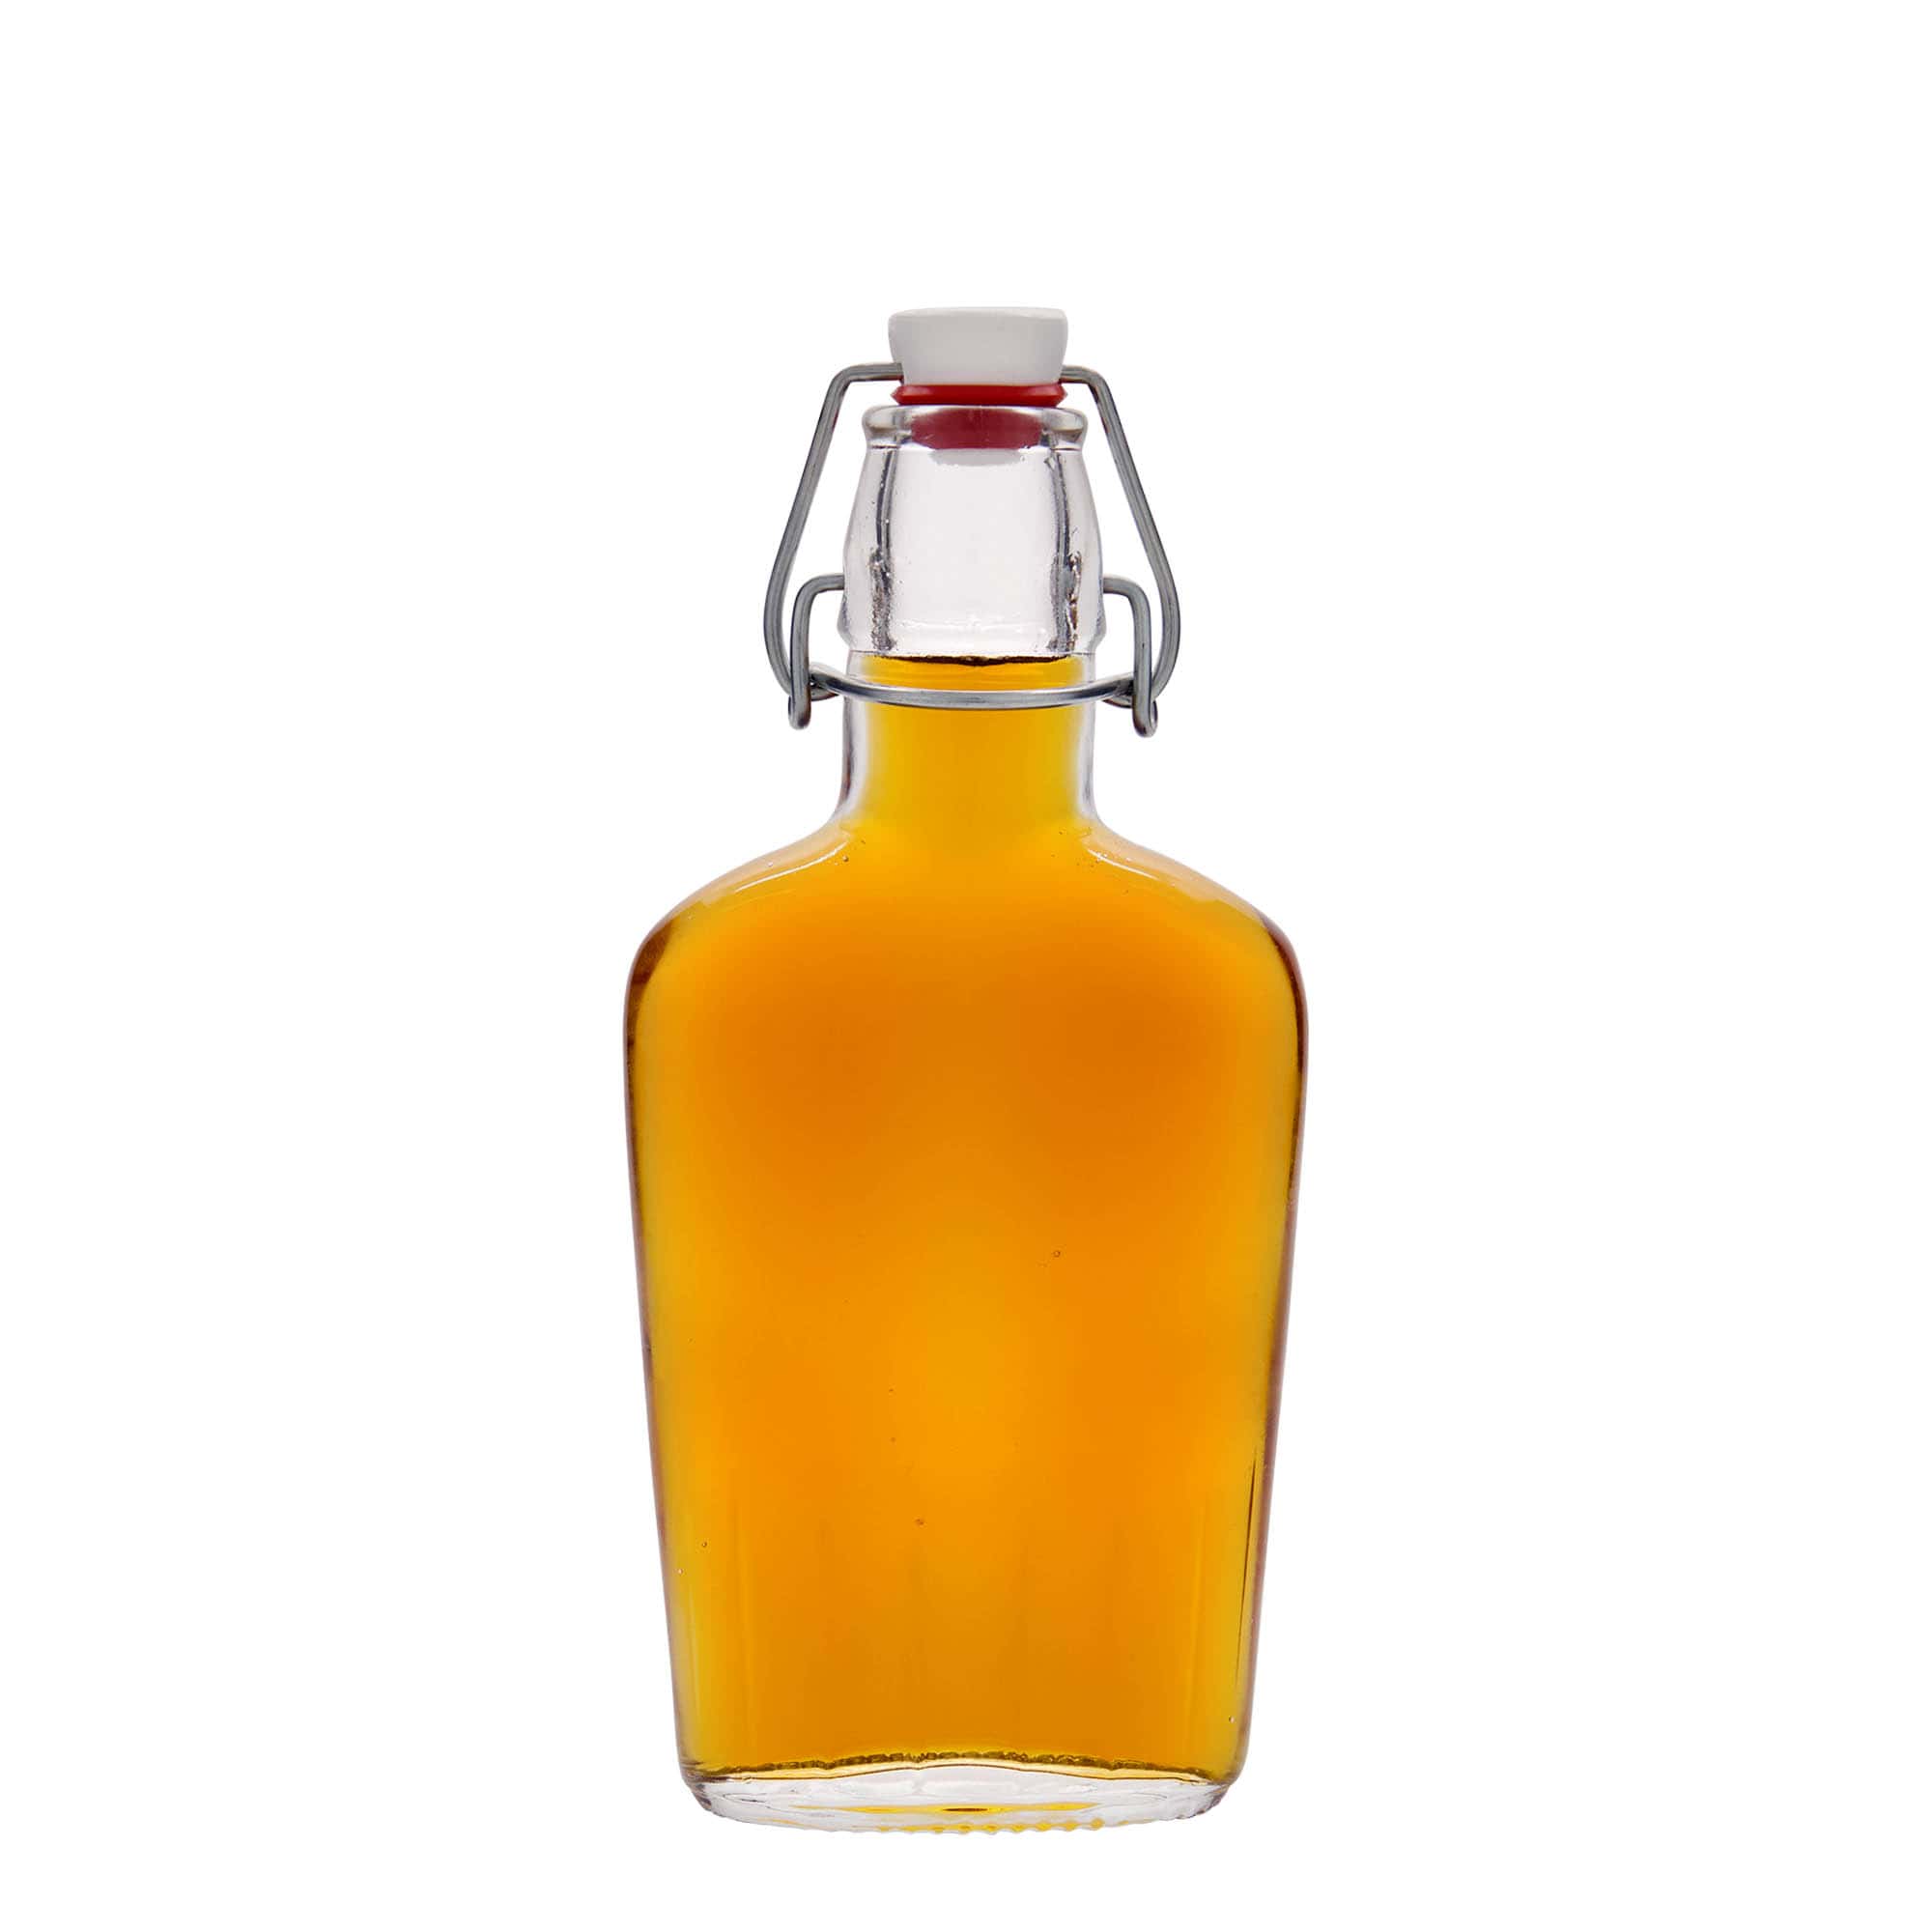 250 ml-es üvegpalack 'Fiaschetta', ovális, szájnyílás: csatos zár